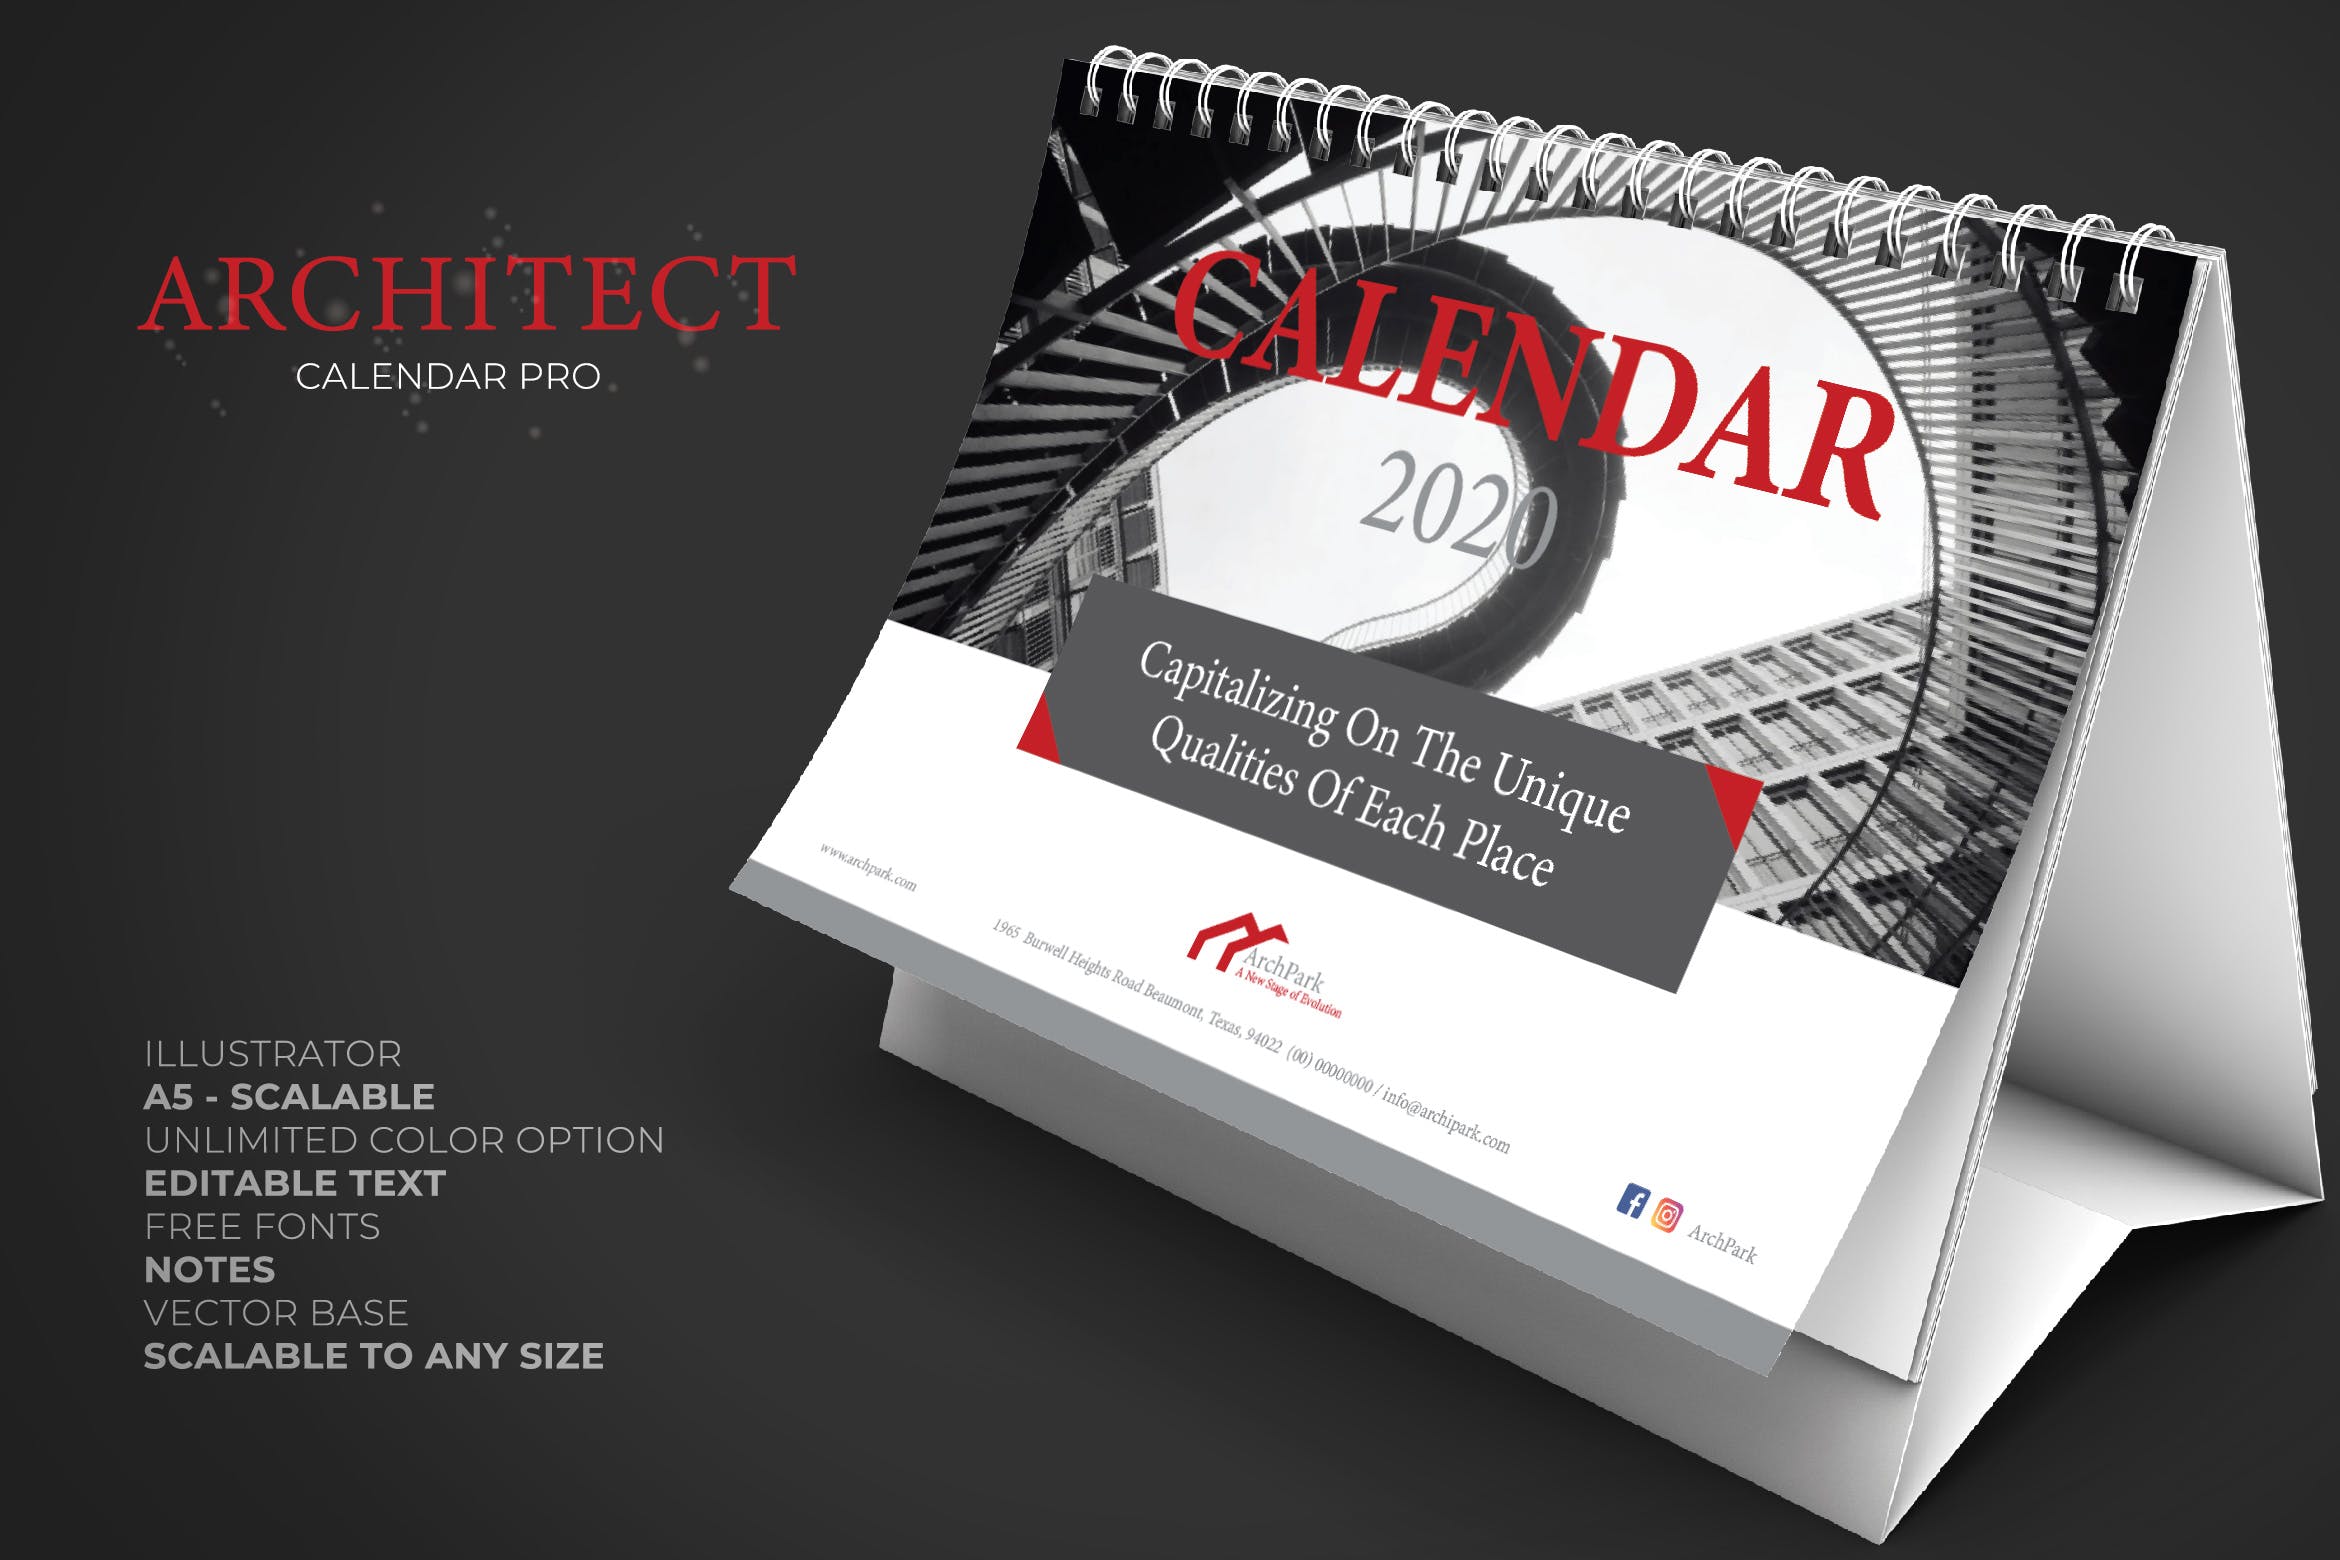 2020年建筑行业主题高端台历设计模板 2020 Architect / Building / Office Calendar Pro插图